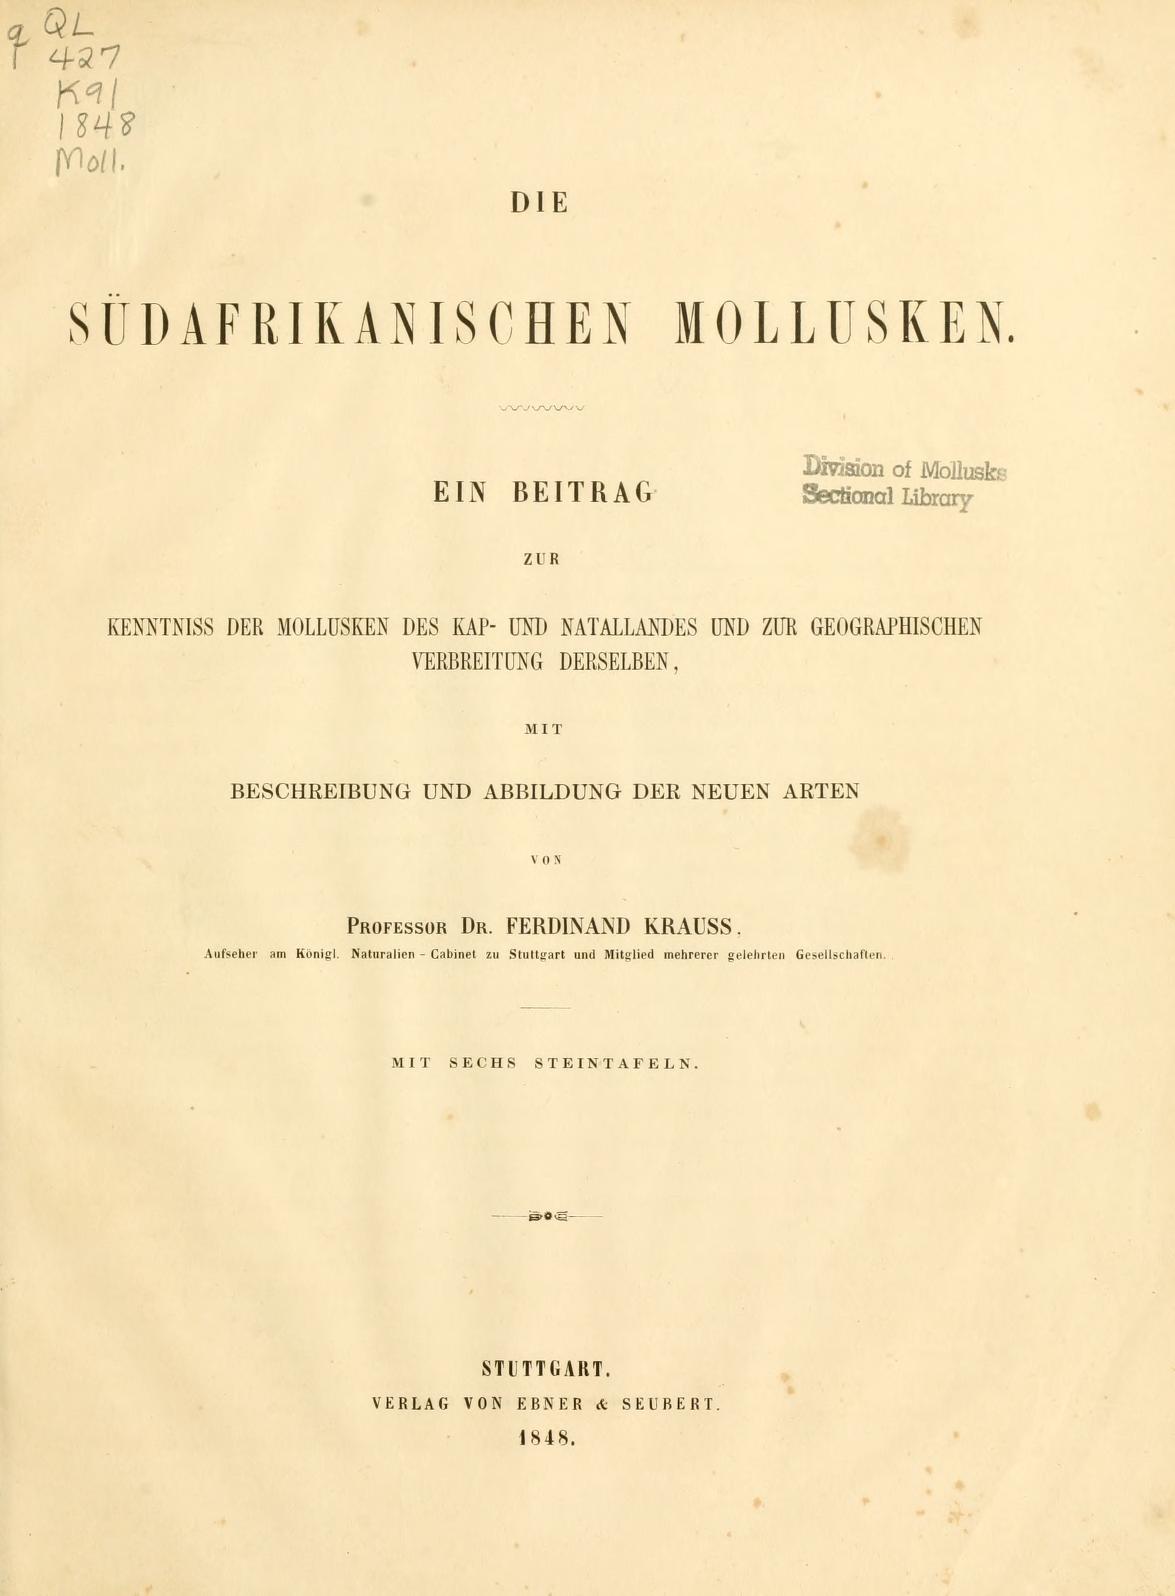 Media type: text; Krauss 1848 Description: Die südafrikanischen Mollusken;